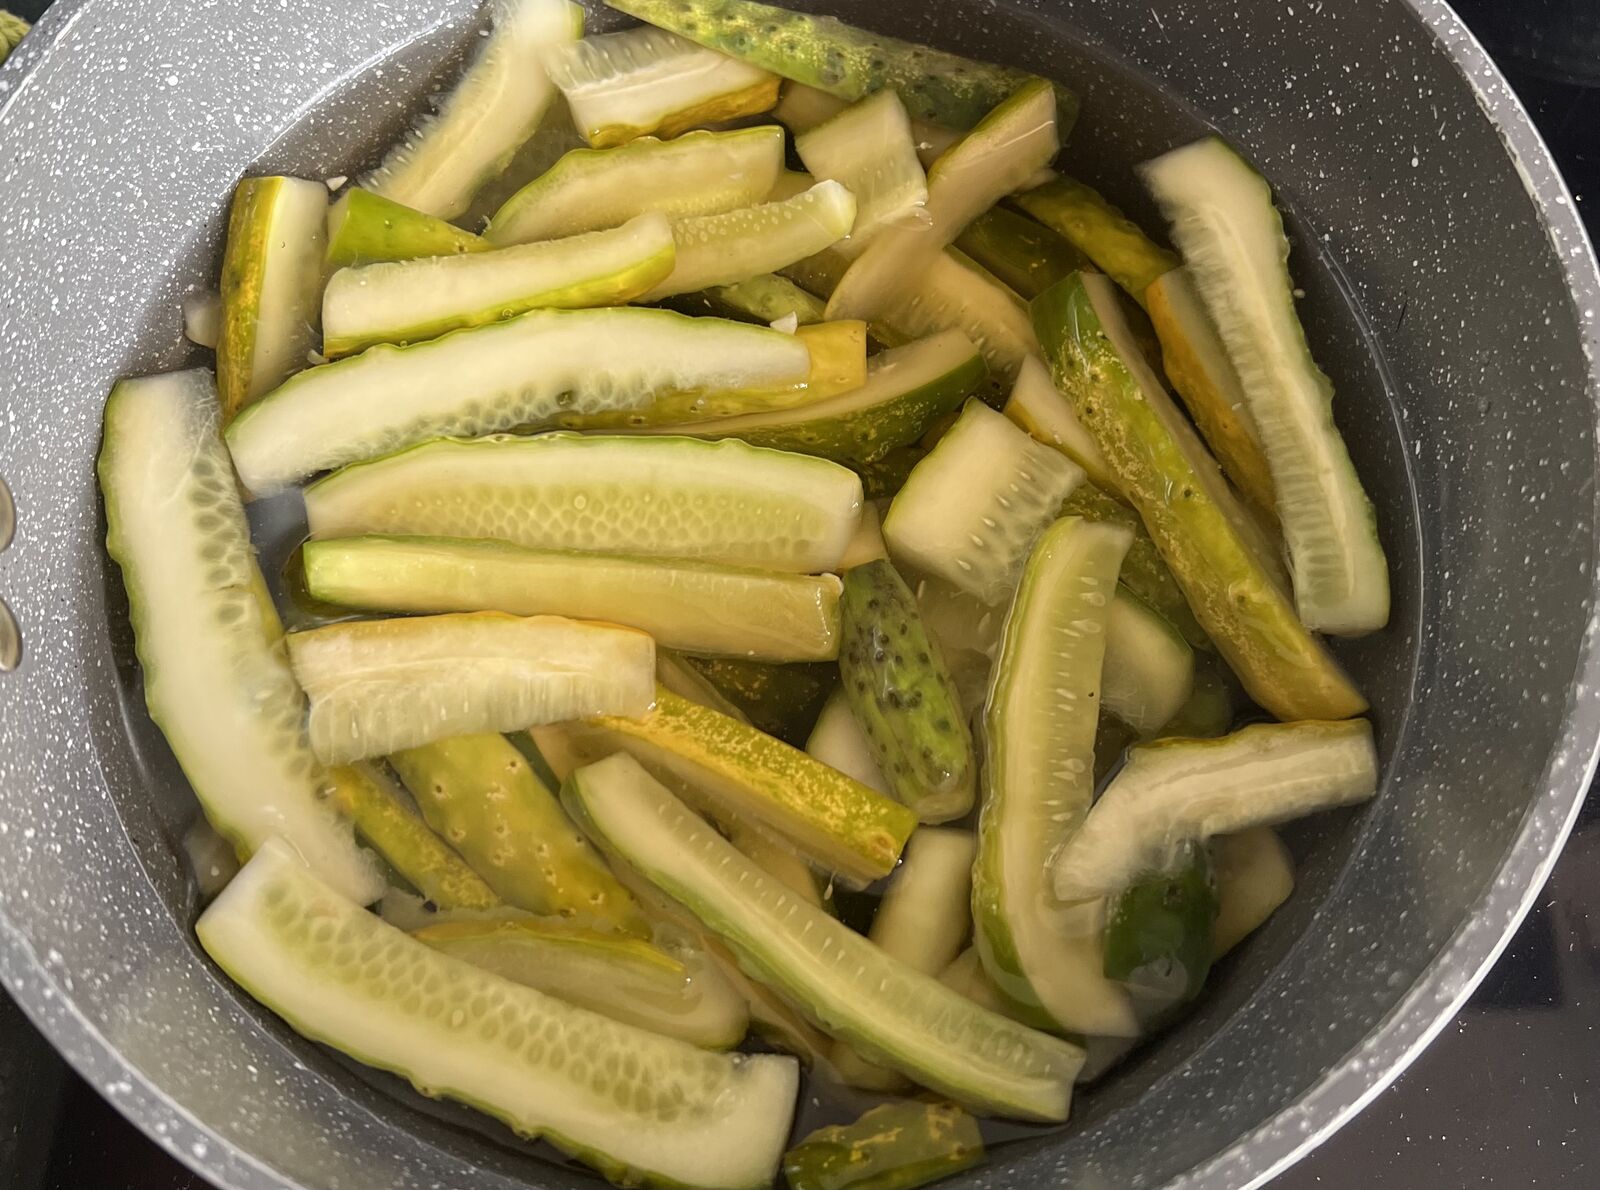 Preserving cucumbers